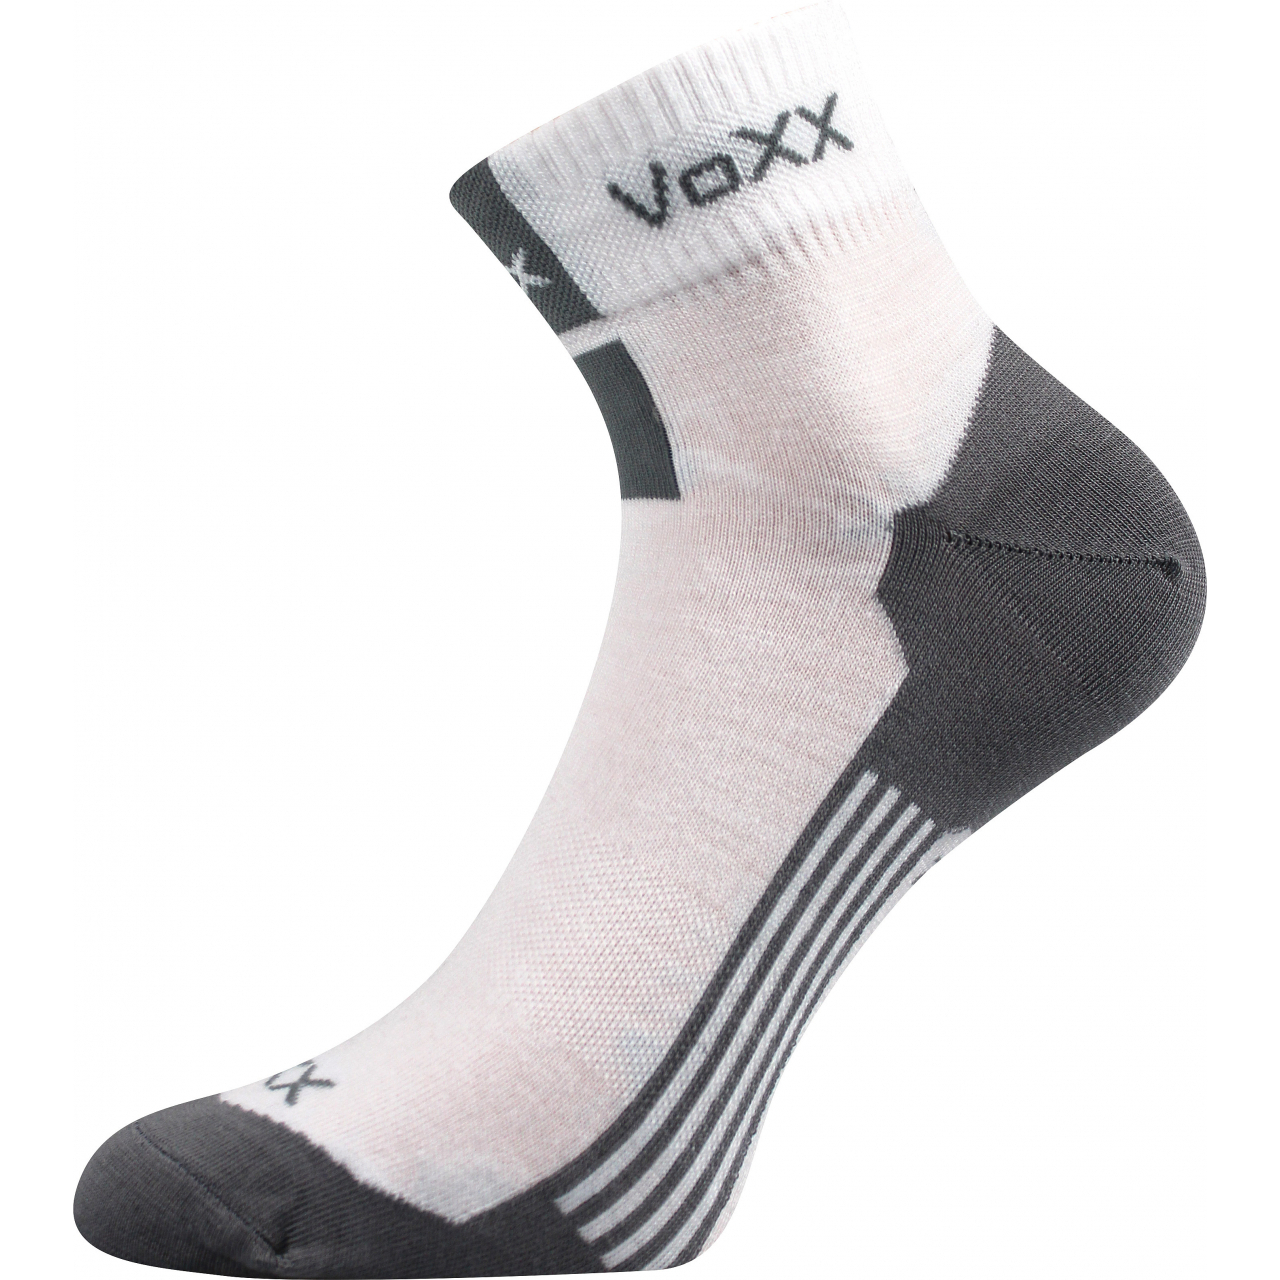 Ponožky unisex klasické Voxx Mostan silproX - bílé, 39-42